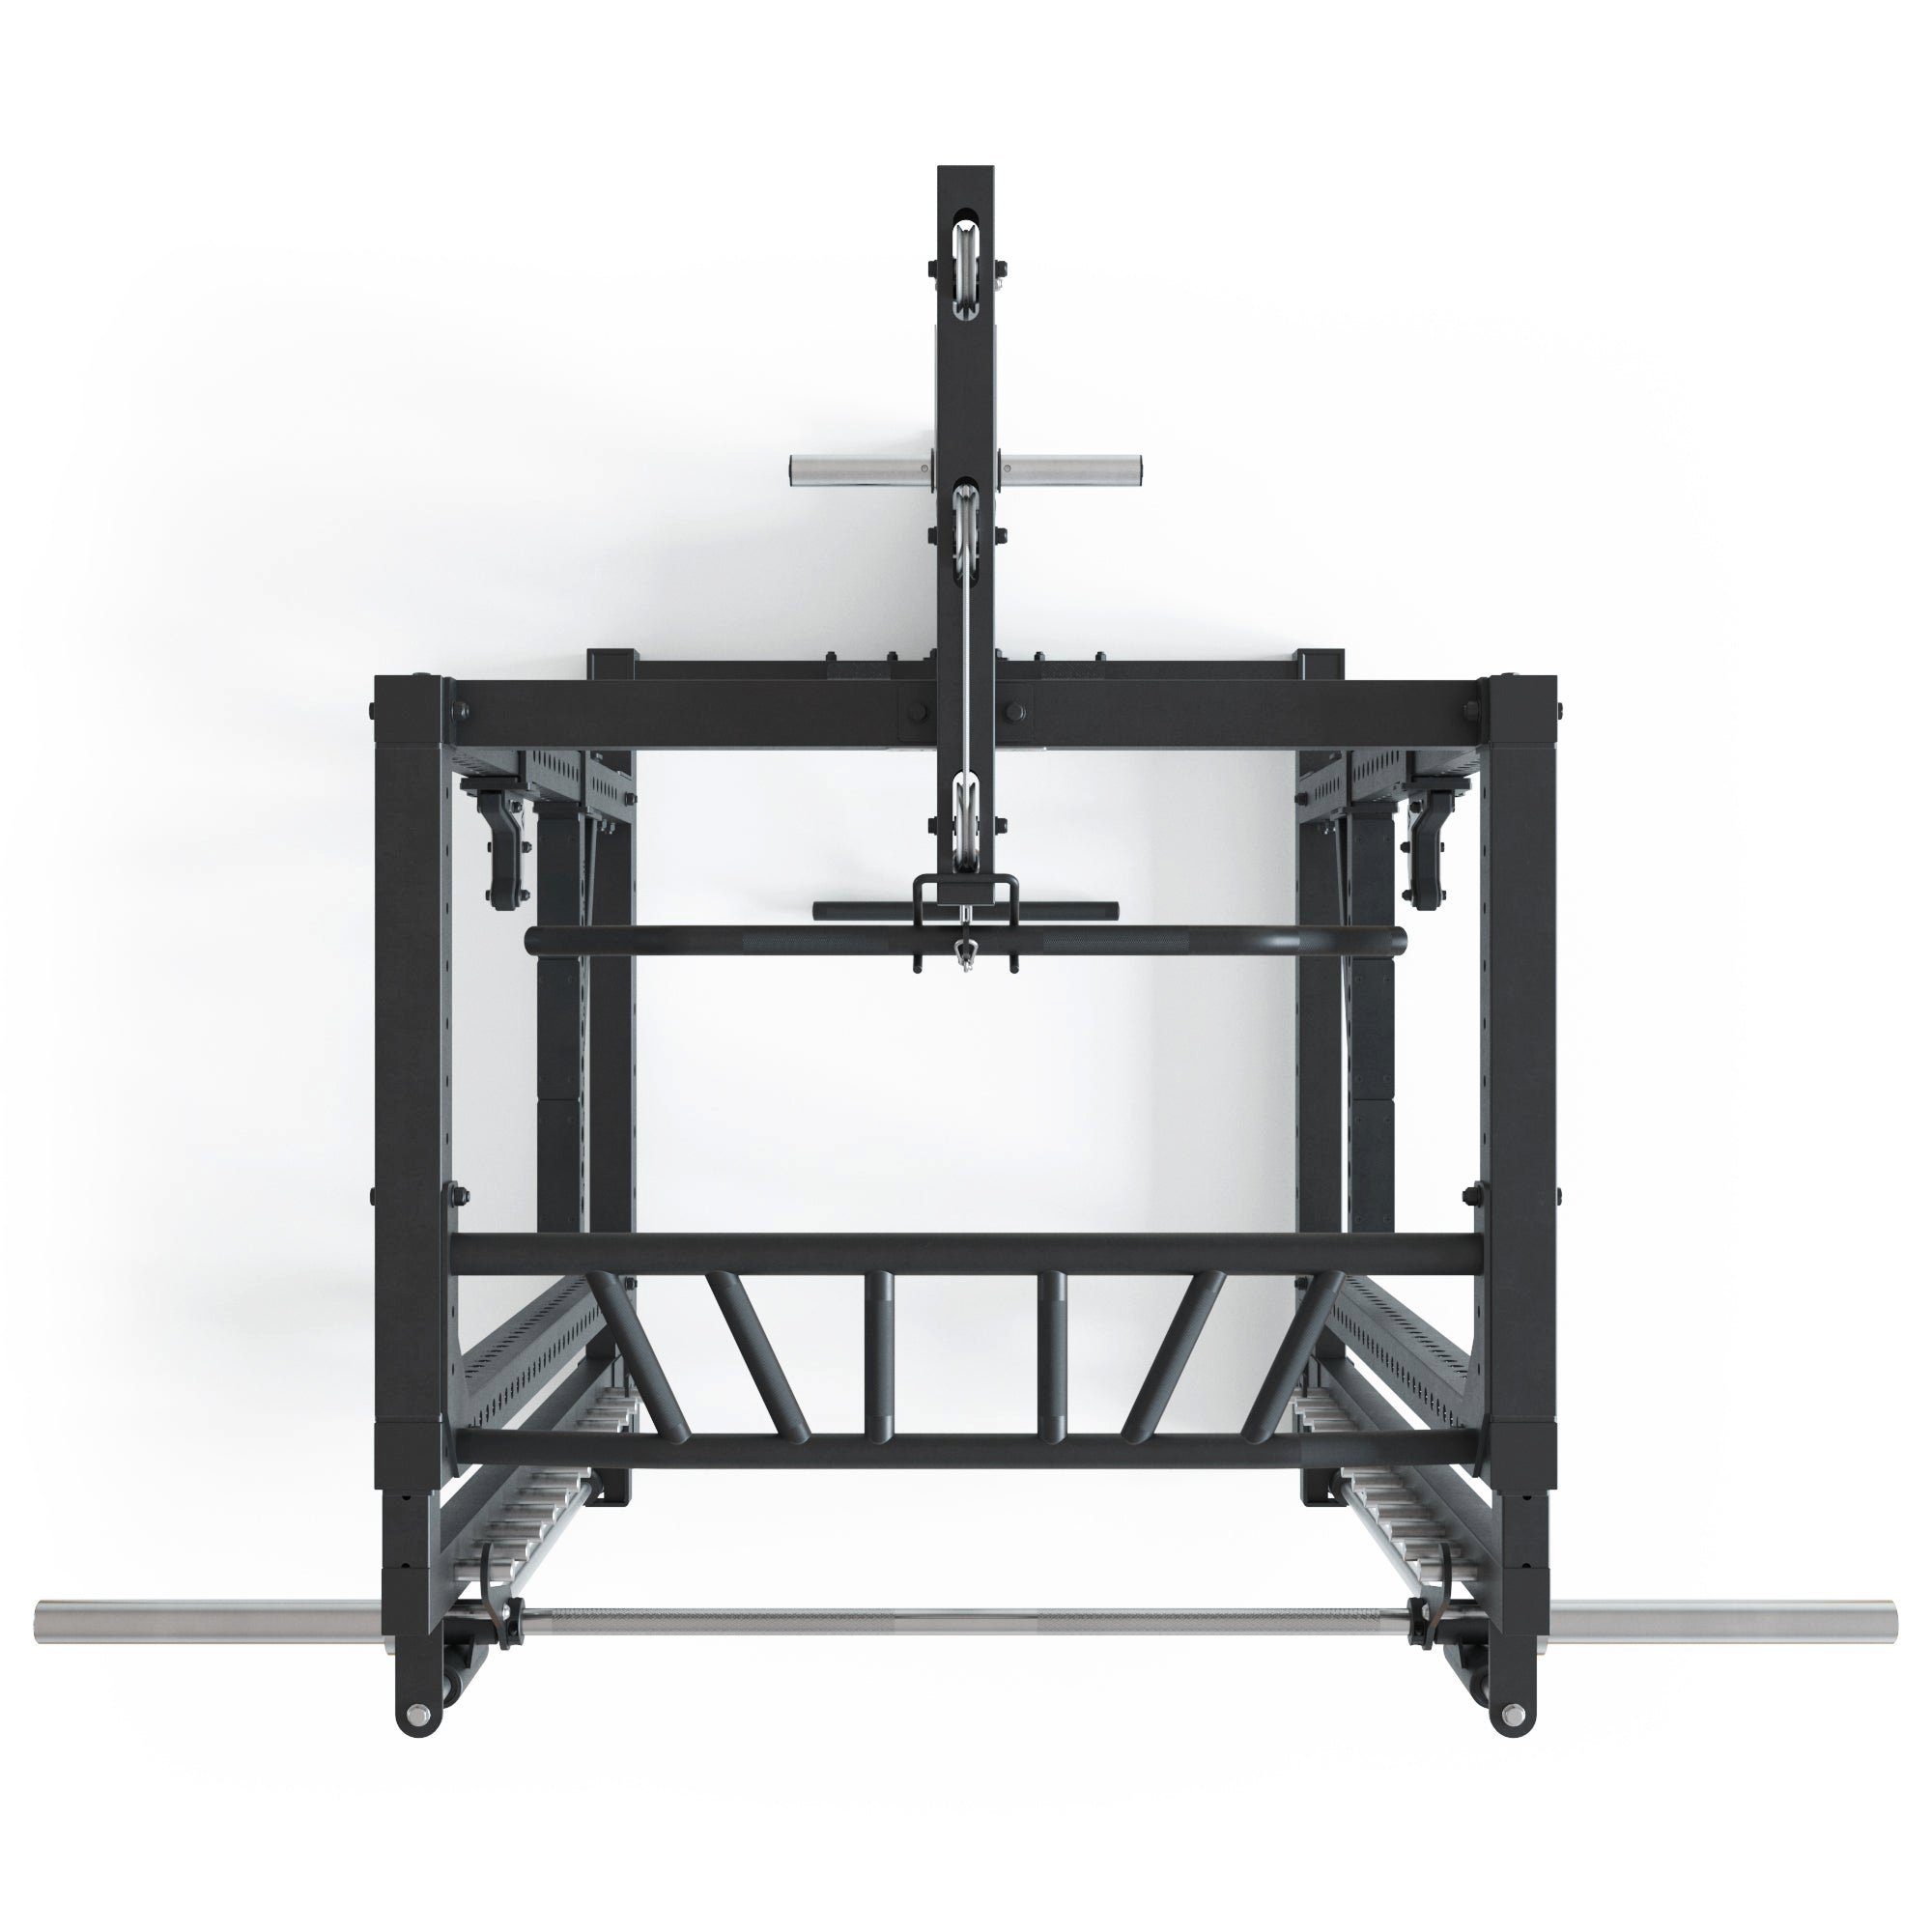 Plate R7-Forge Load ATLETICA Gewichte Rack Power Power Smith mit Machine Rack und